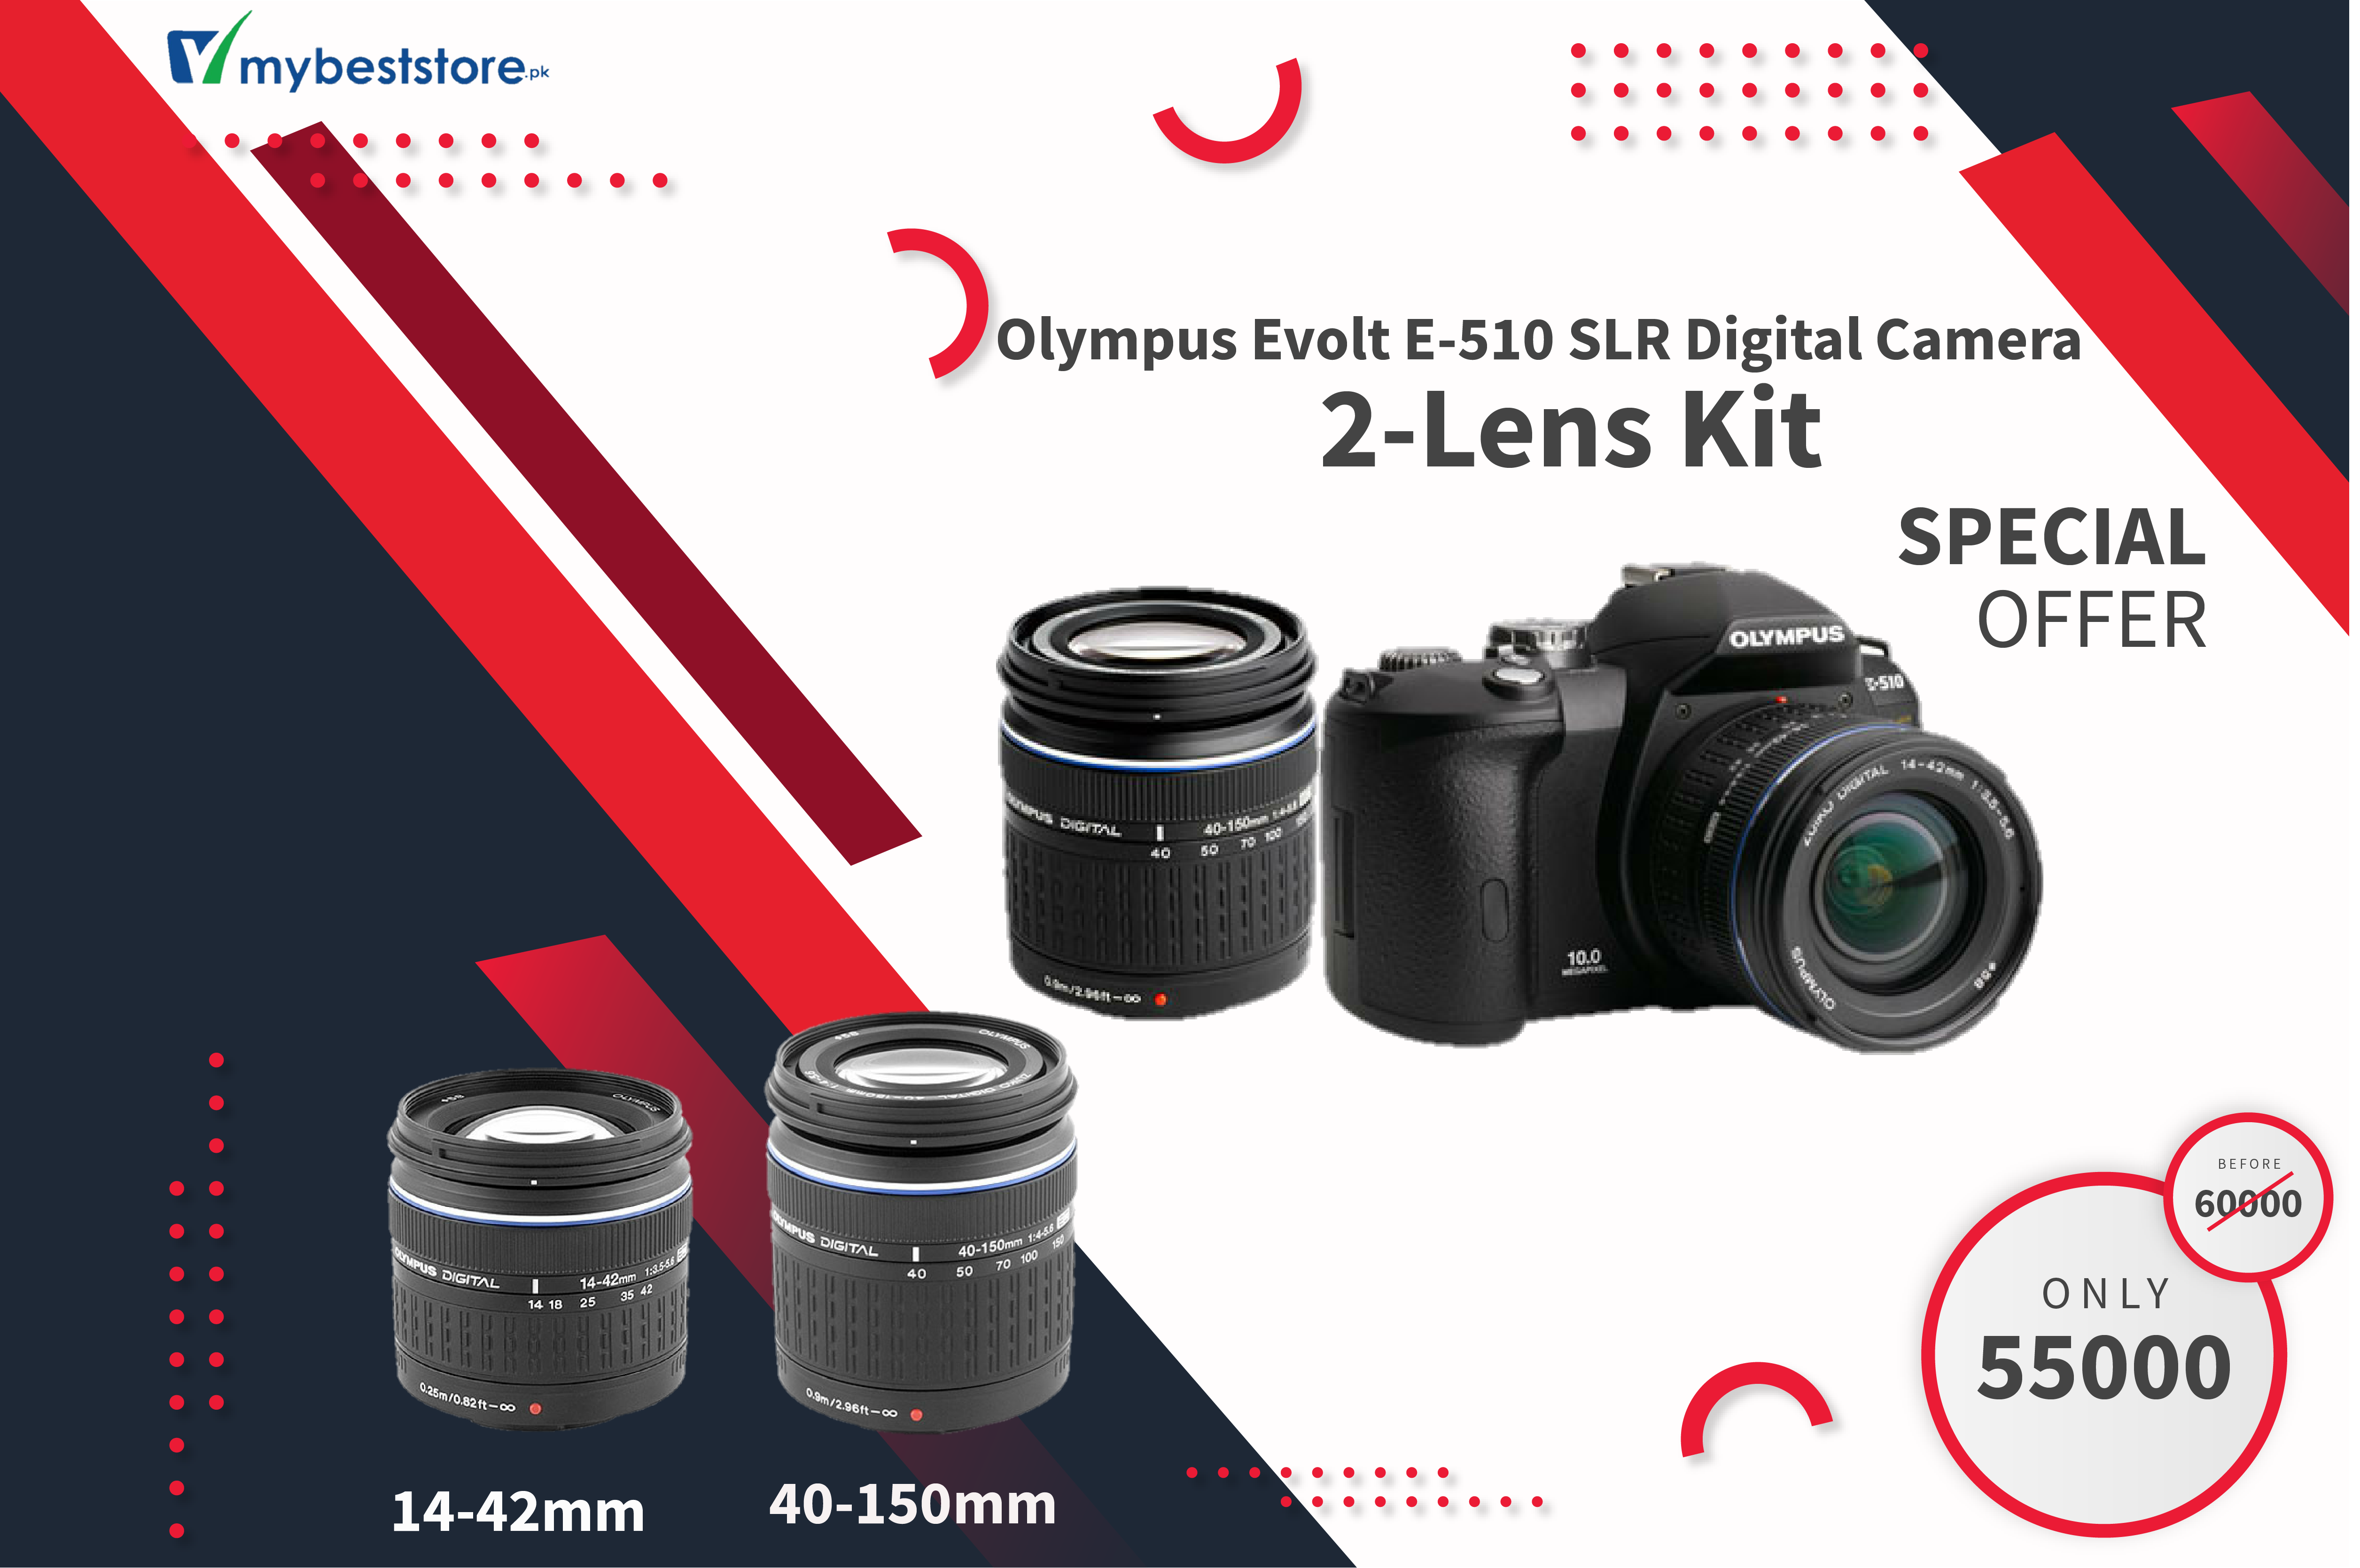 Olympus Evolt E-510 SLR Digital Camera 2-Lens Kit